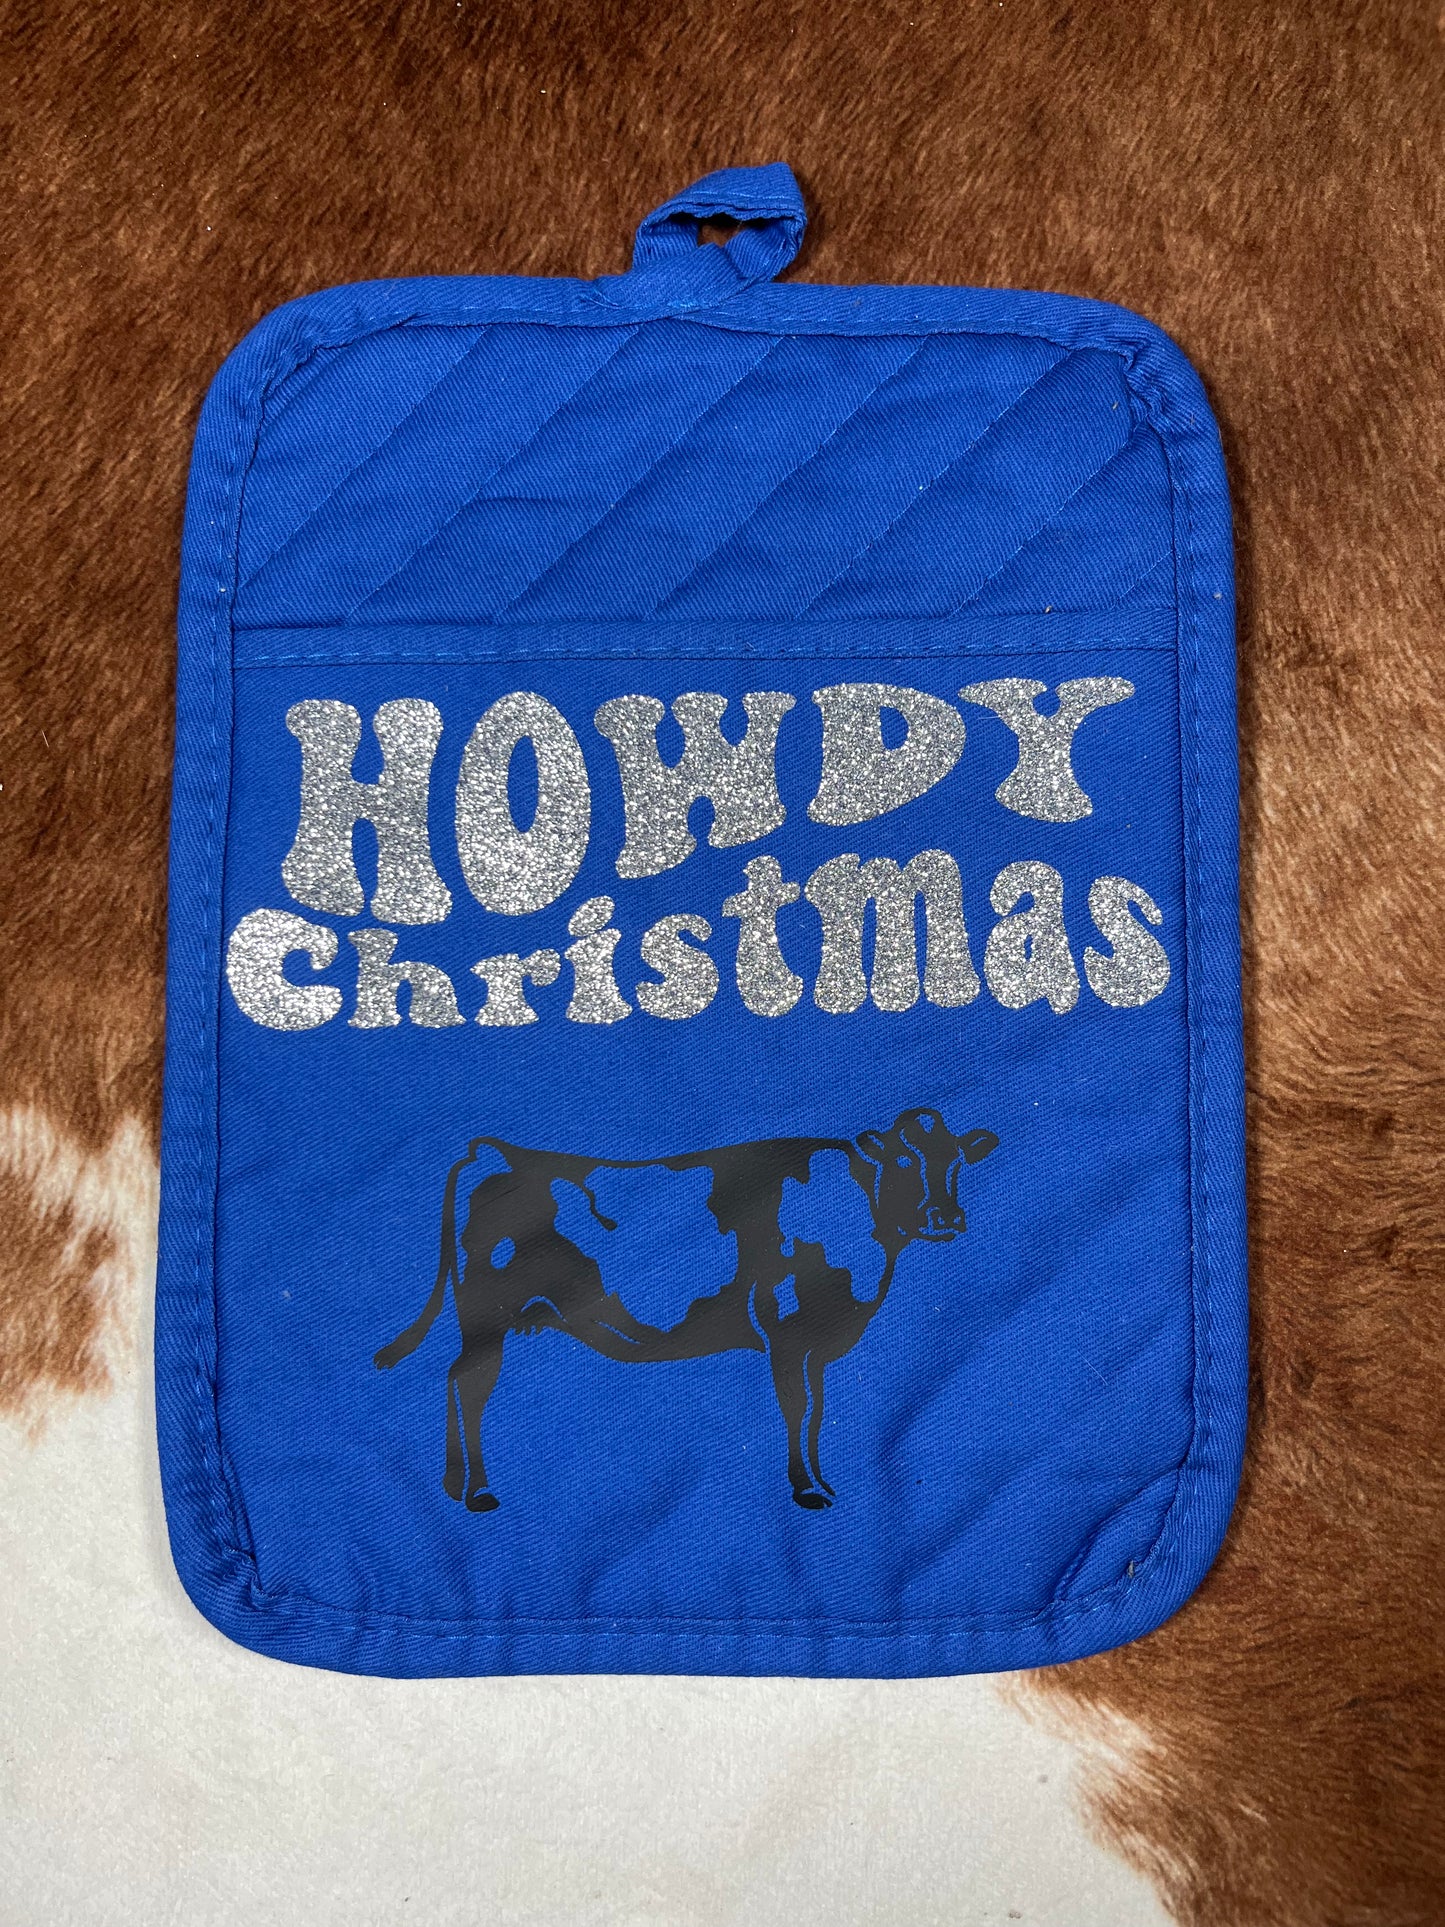 Howdy Christmas Pot Holder